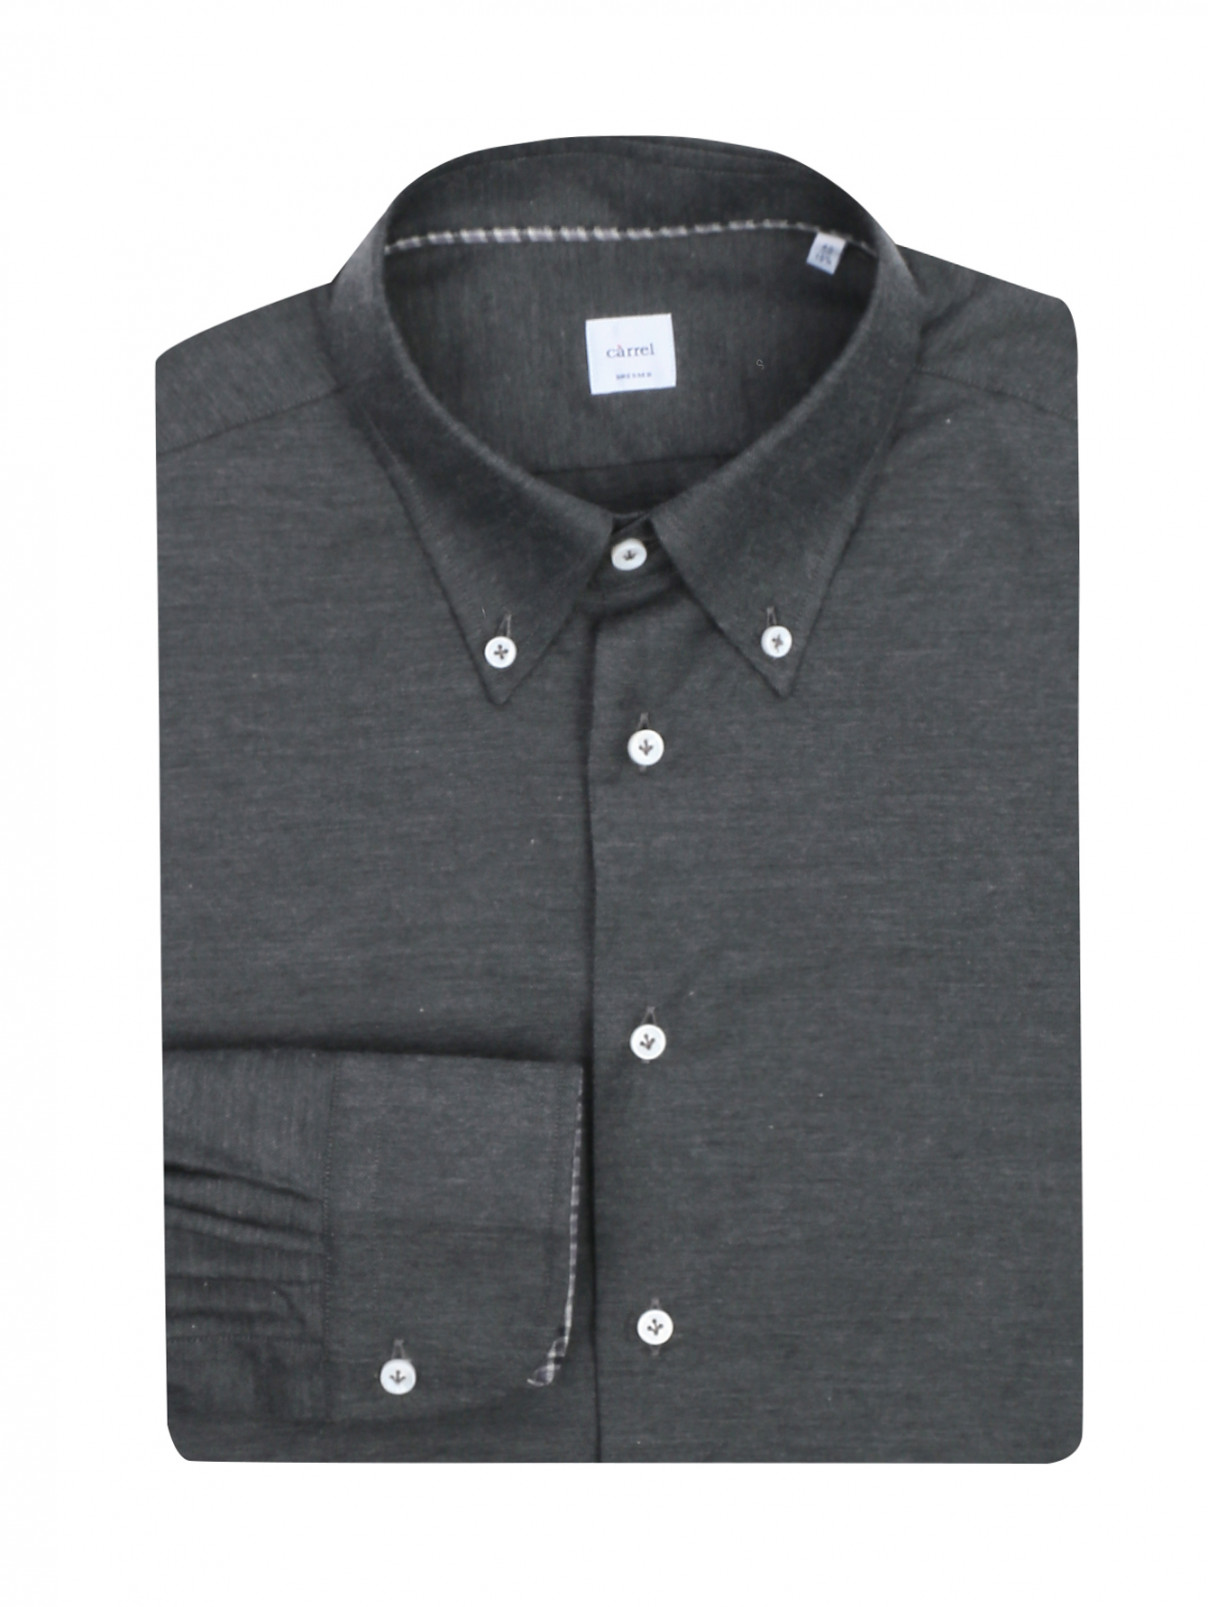 Рубашка из хлопка Carrel  –  Общий вид  – Цвет:  Серый